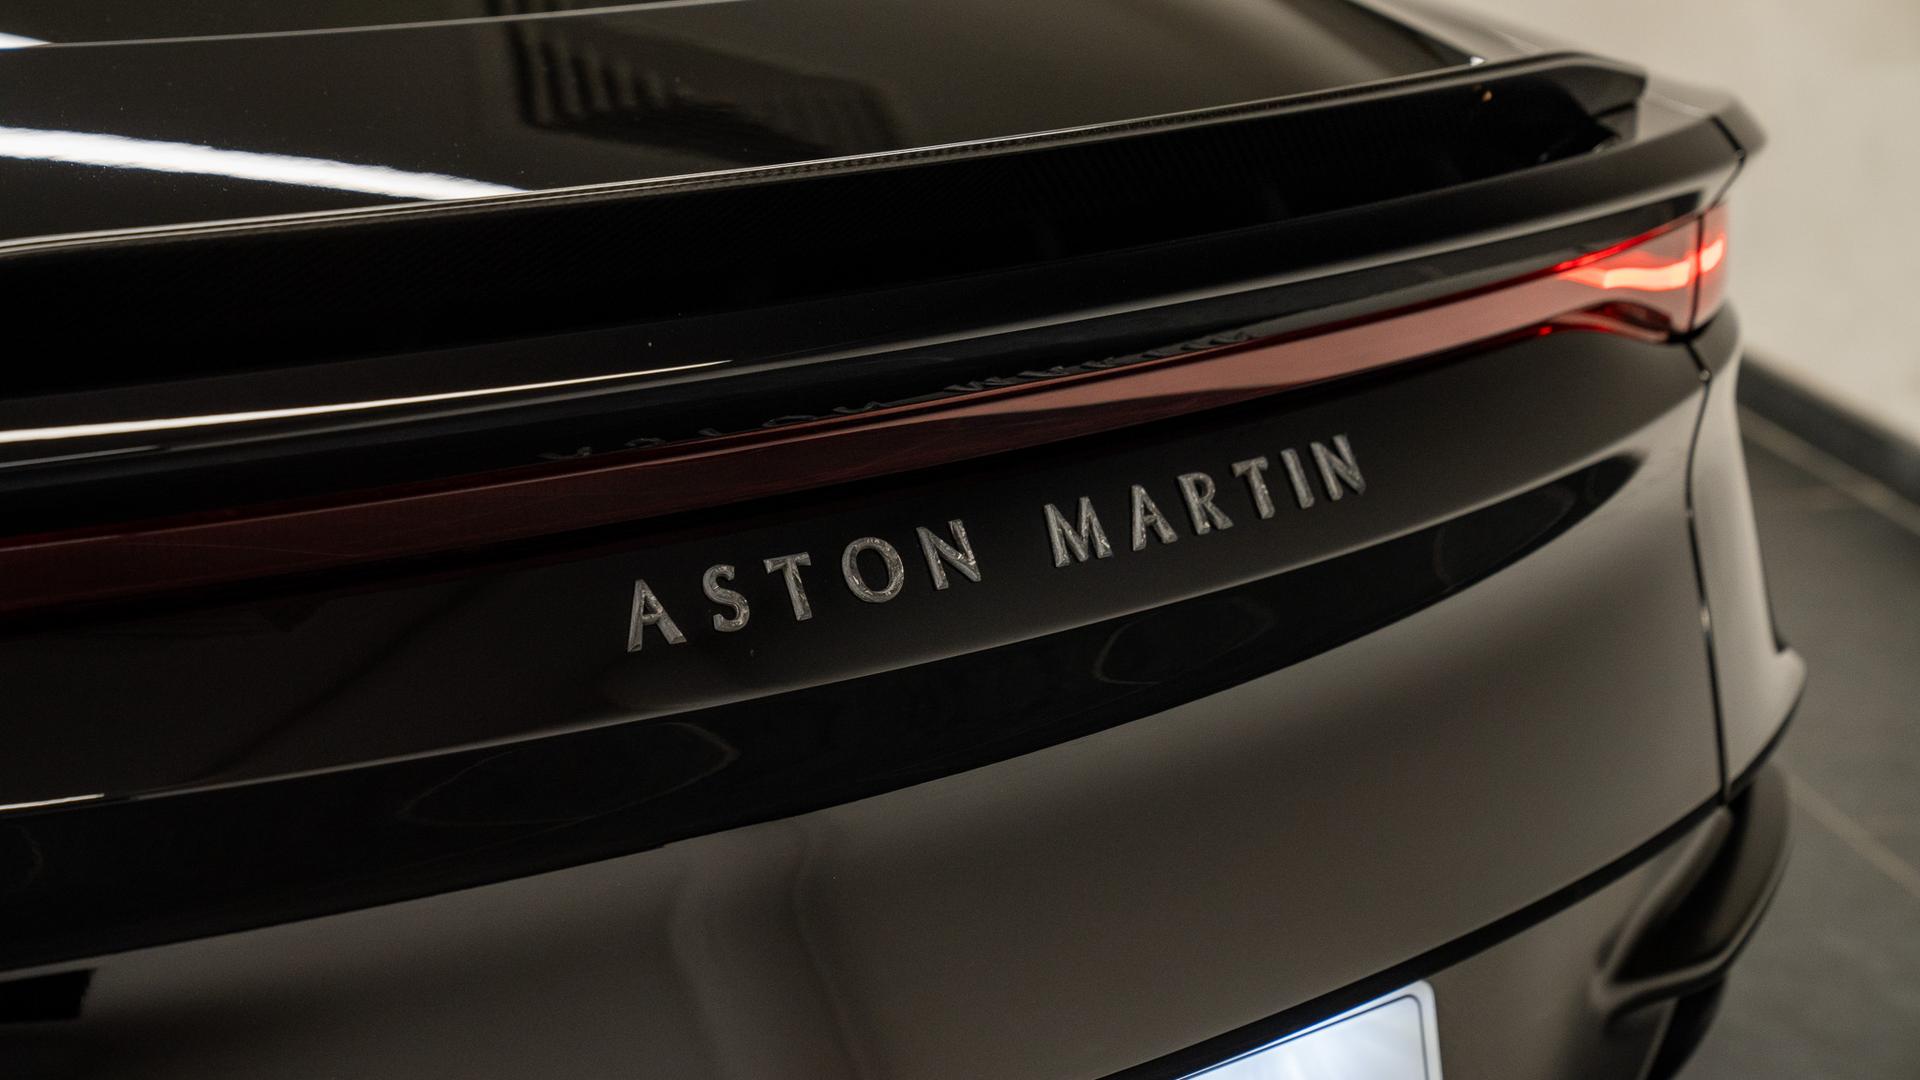 Aston Martin DBS Superleggera Photo 54c8fd76-93d6-41ef-8981-9f3502b1fac4.jpg